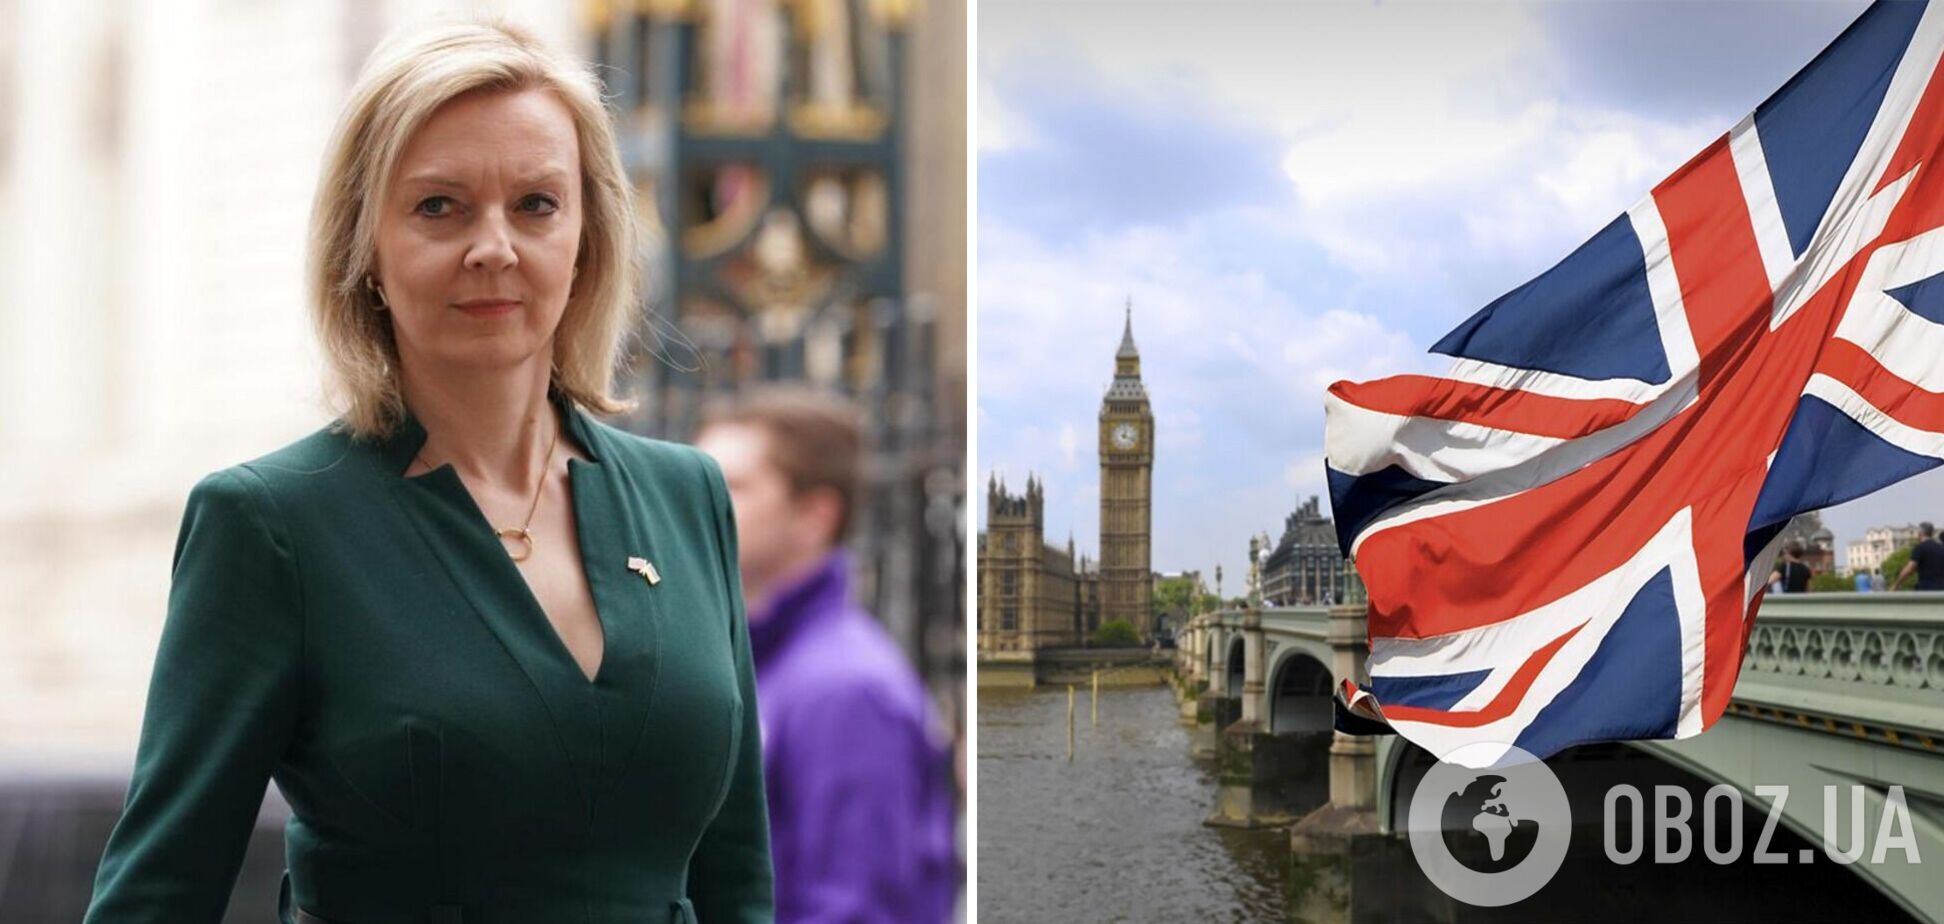 Лиз Трасс, обещавшая сделать все для победы Украины, выдвинула свою кандидатуру на пост премьера Британии